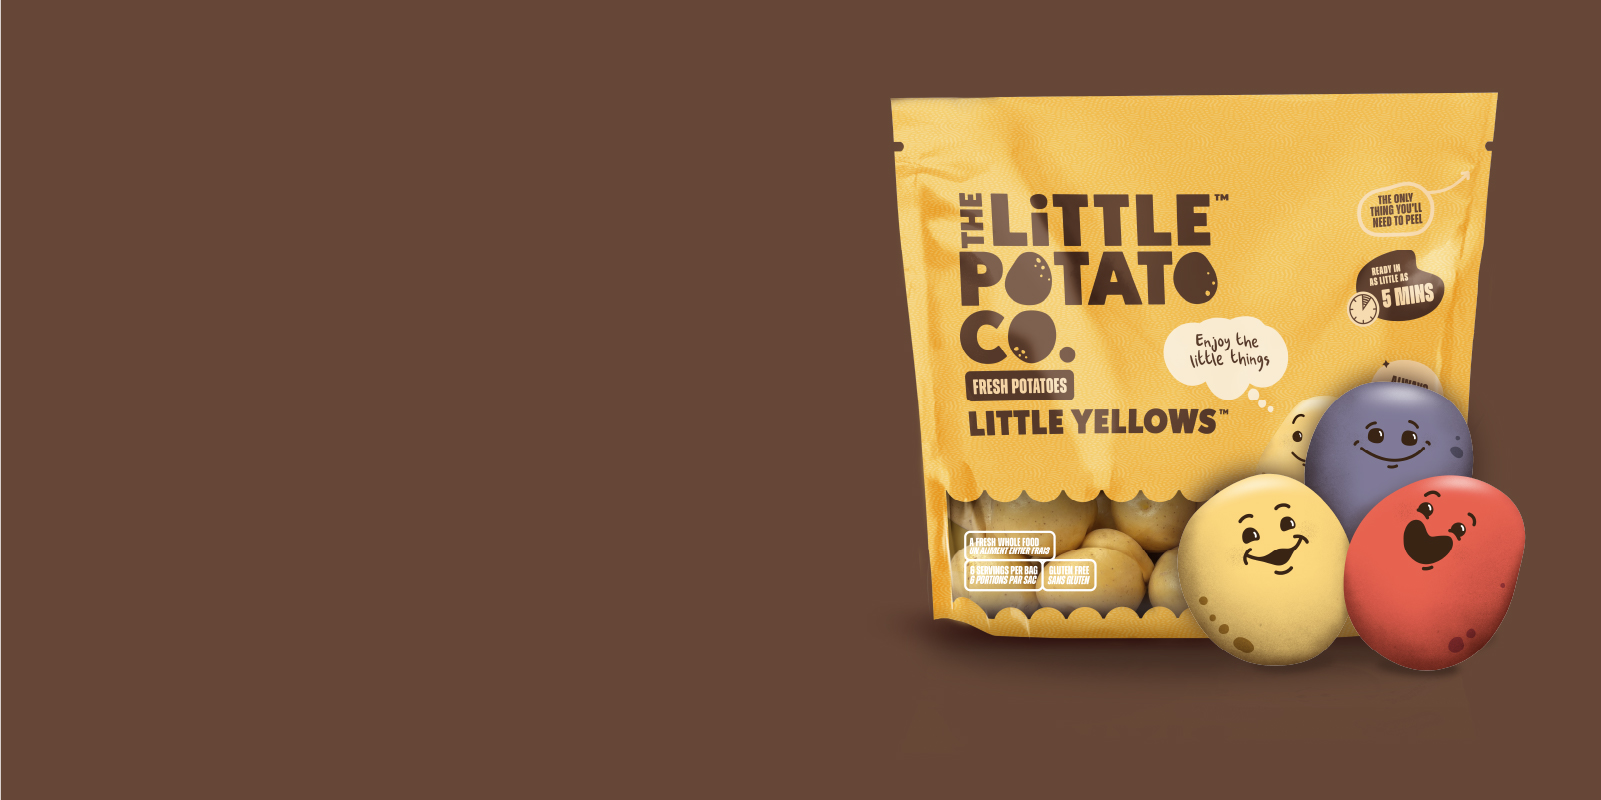 www.littlepotatoes.com